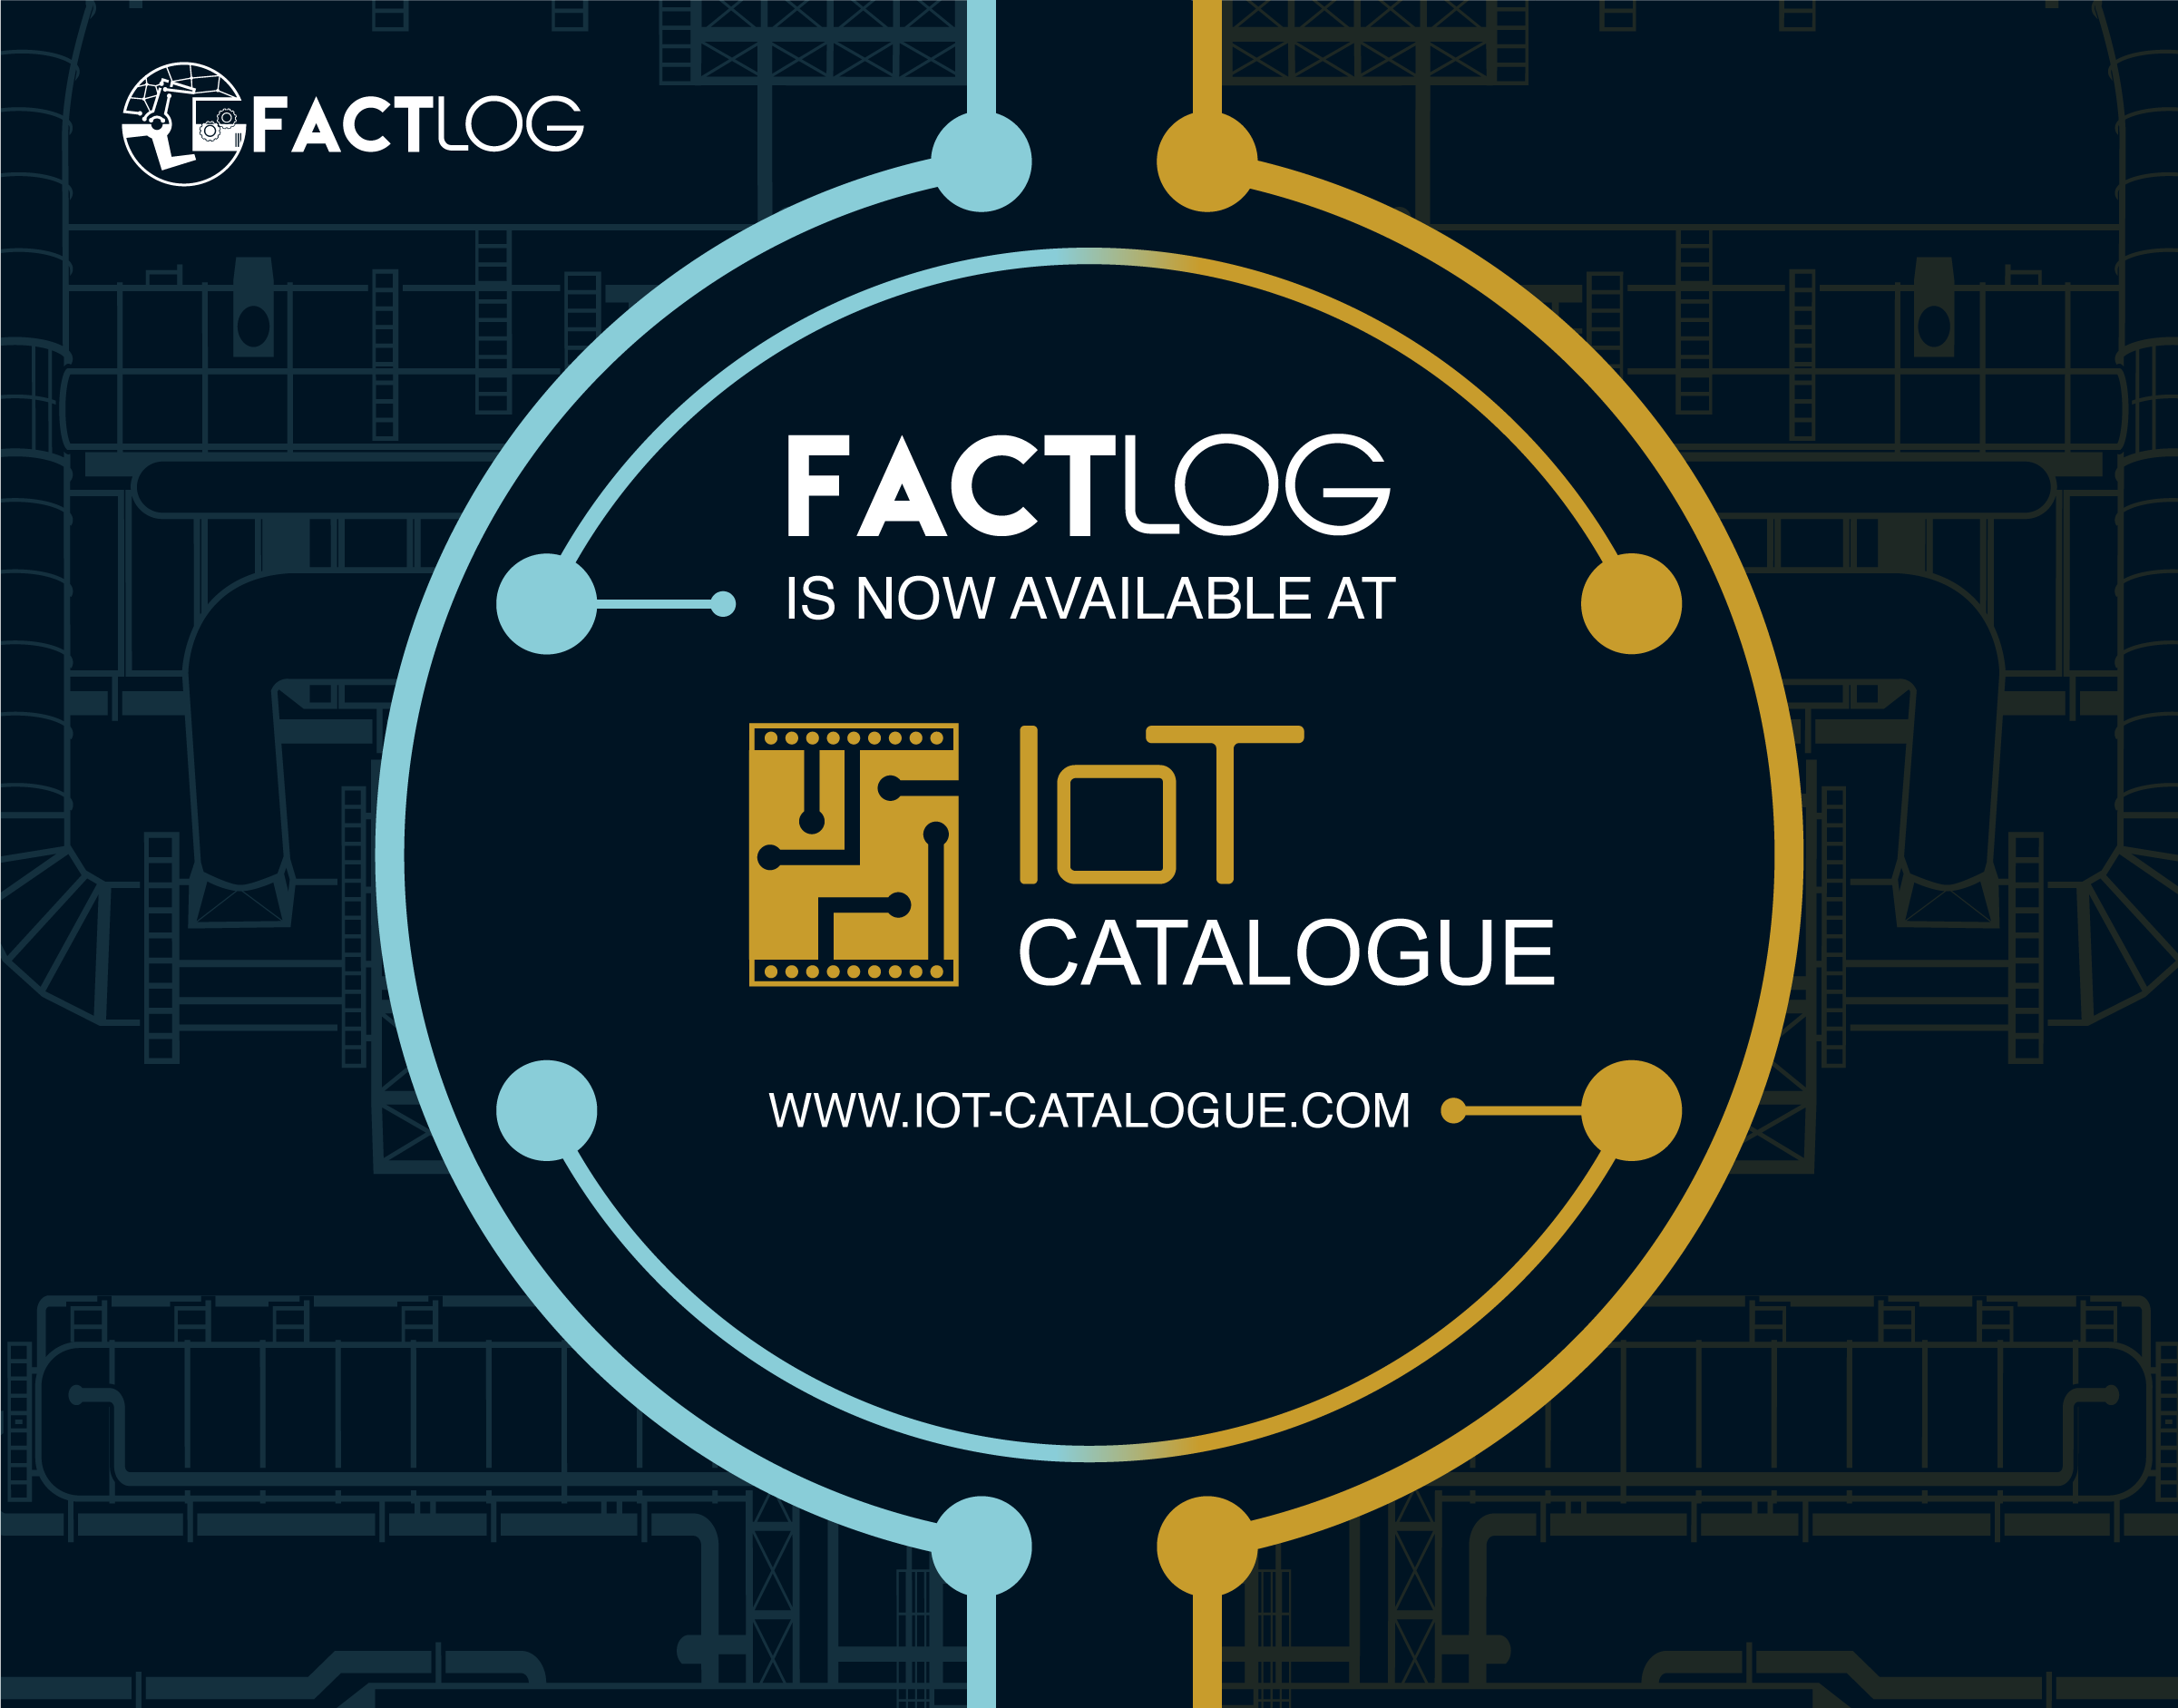 Newsletter #7: FACTLOG @ IoT-Catalogue.com